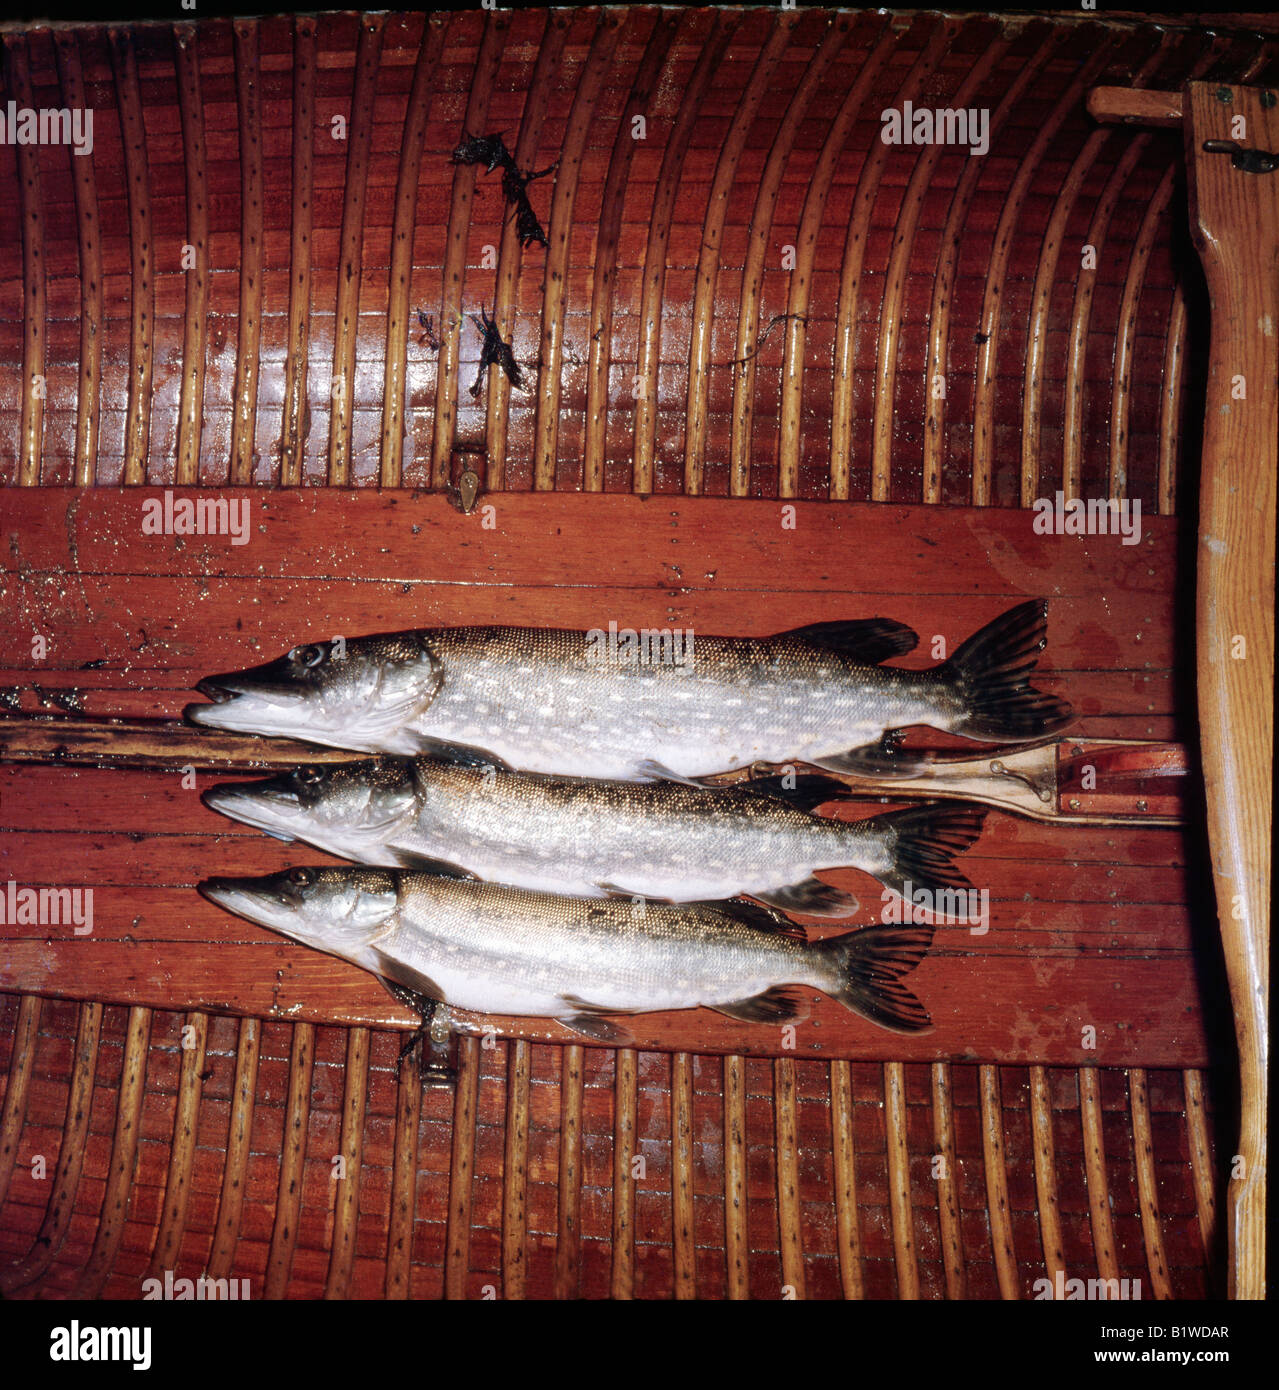 Peche de 2 heures sur onu Etang de Sologne Questa immagine mostra il risultato di due ore di pesca nel lago di Sologne Francia brochets p Foto Stock